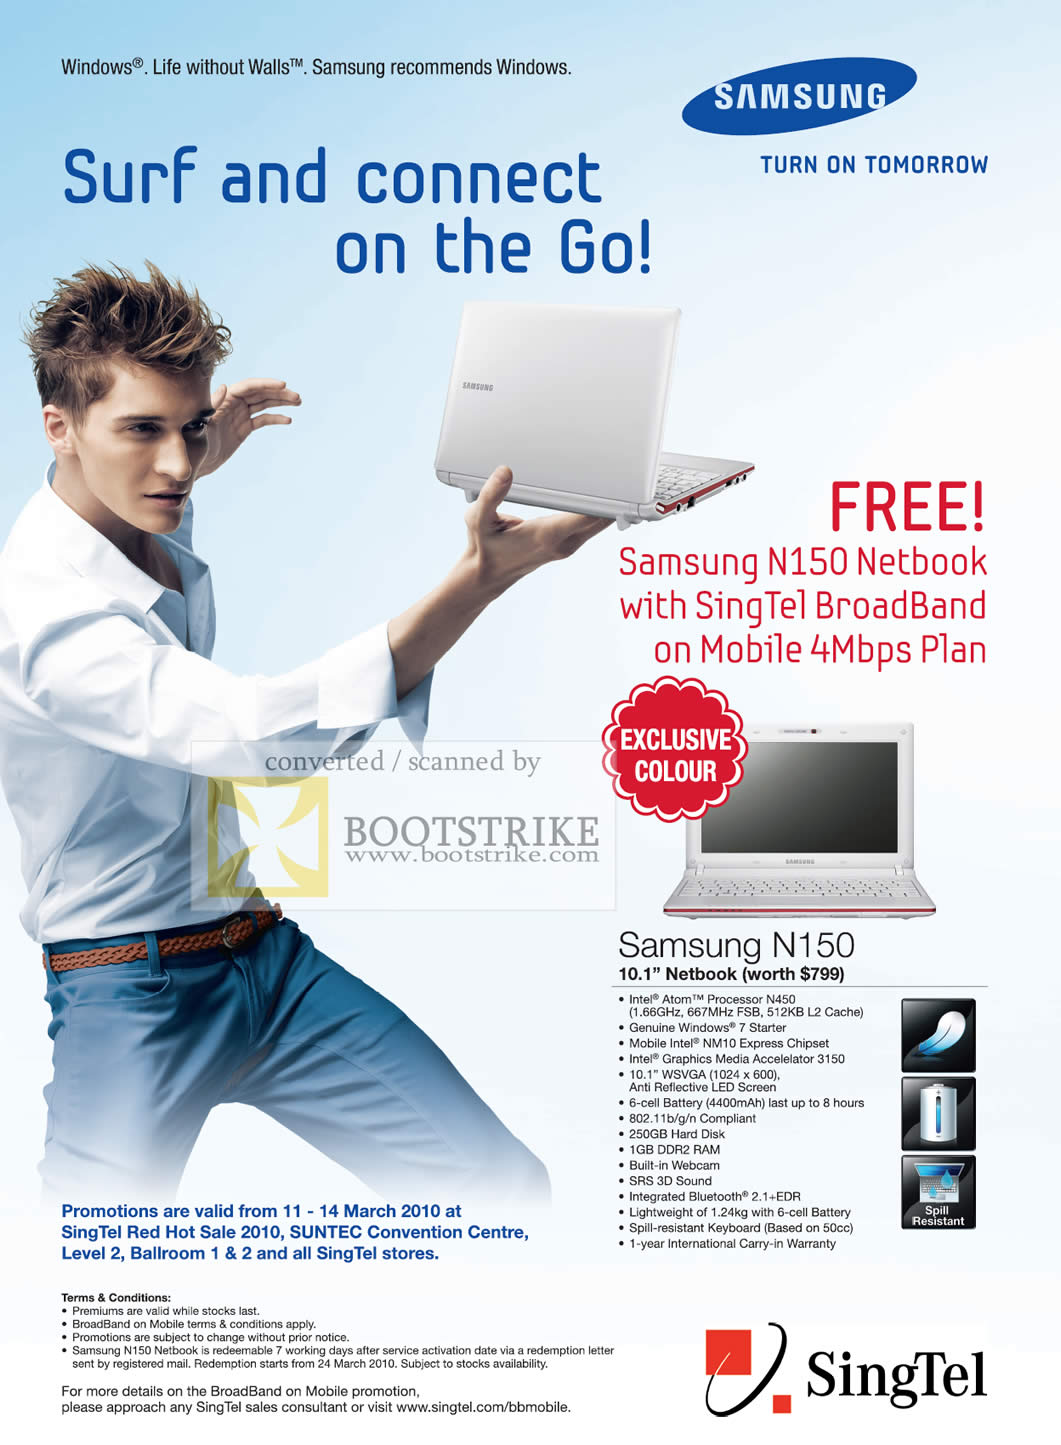 IT Show 2010 price list image brochure of Singtel Mobile Broadband Samsung N150 Netbook